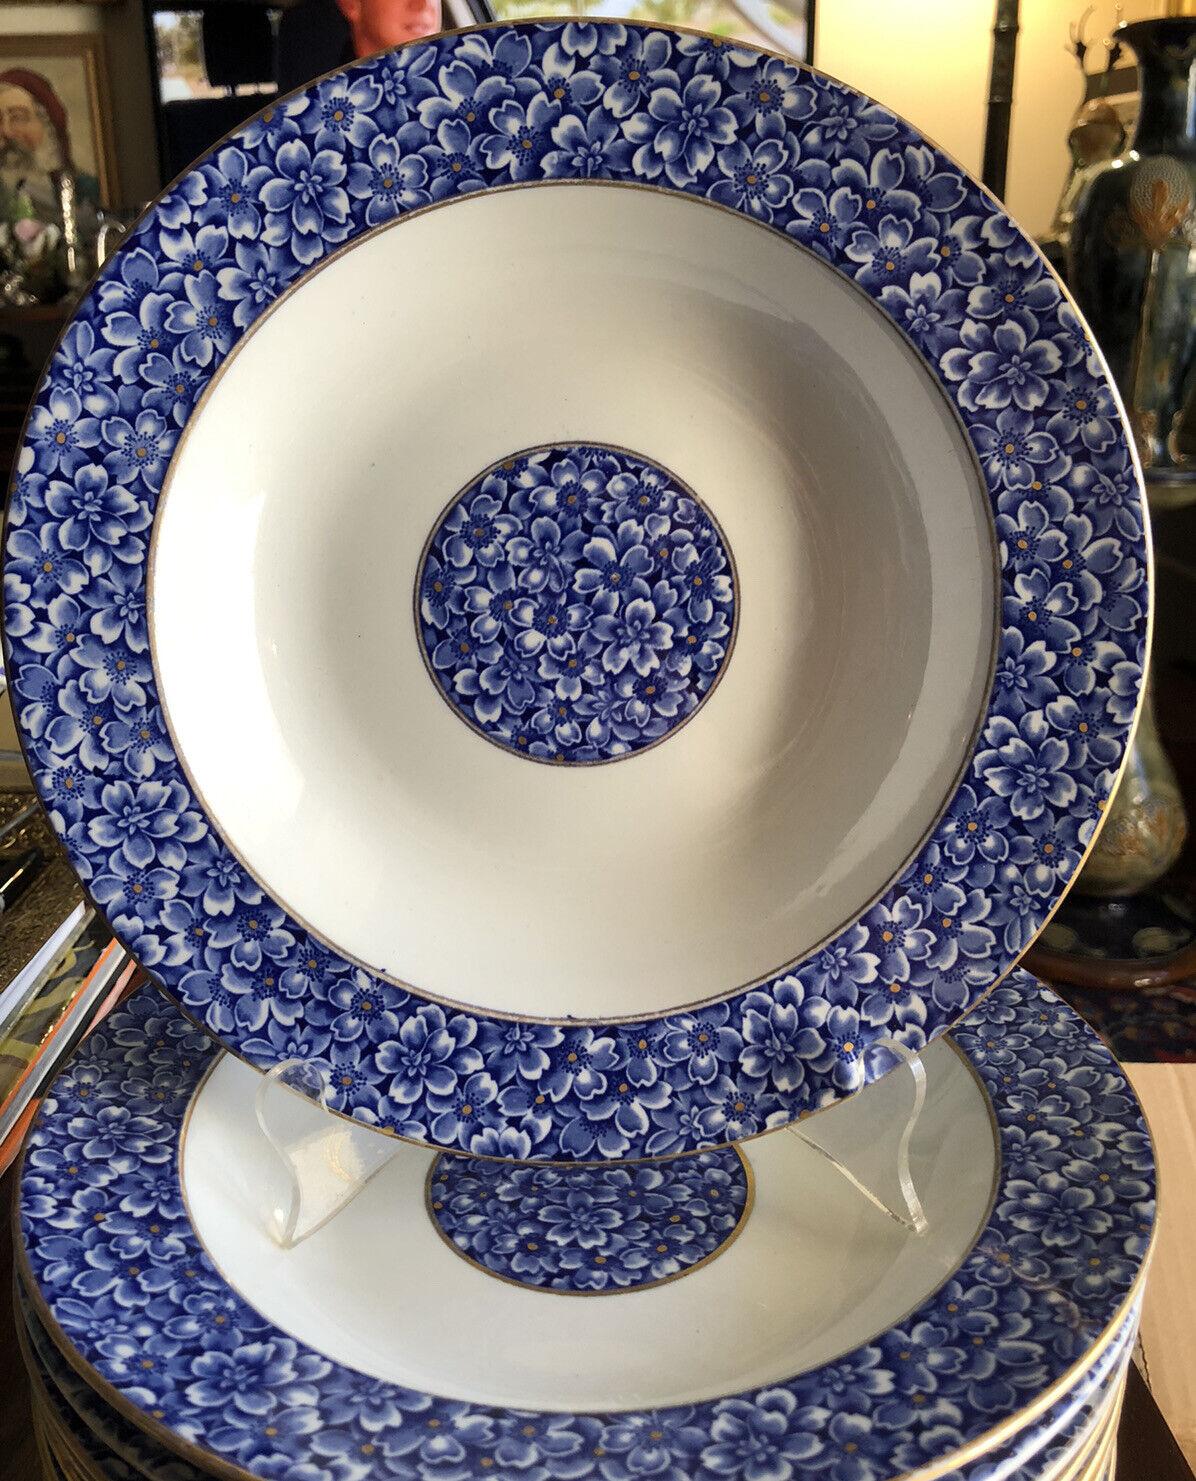 Royal Worcester (Englisch, 1751-2008) für Tiffany & Company (Amerikanisch, gegründet 1837). Circa 1877. Ein Satz von 10 Suppen- oder Salatschüsseln mit einem schönen blauen Blumenmuster in der Mitte der Schüssel und am Rand. Die Unterseite ist mit